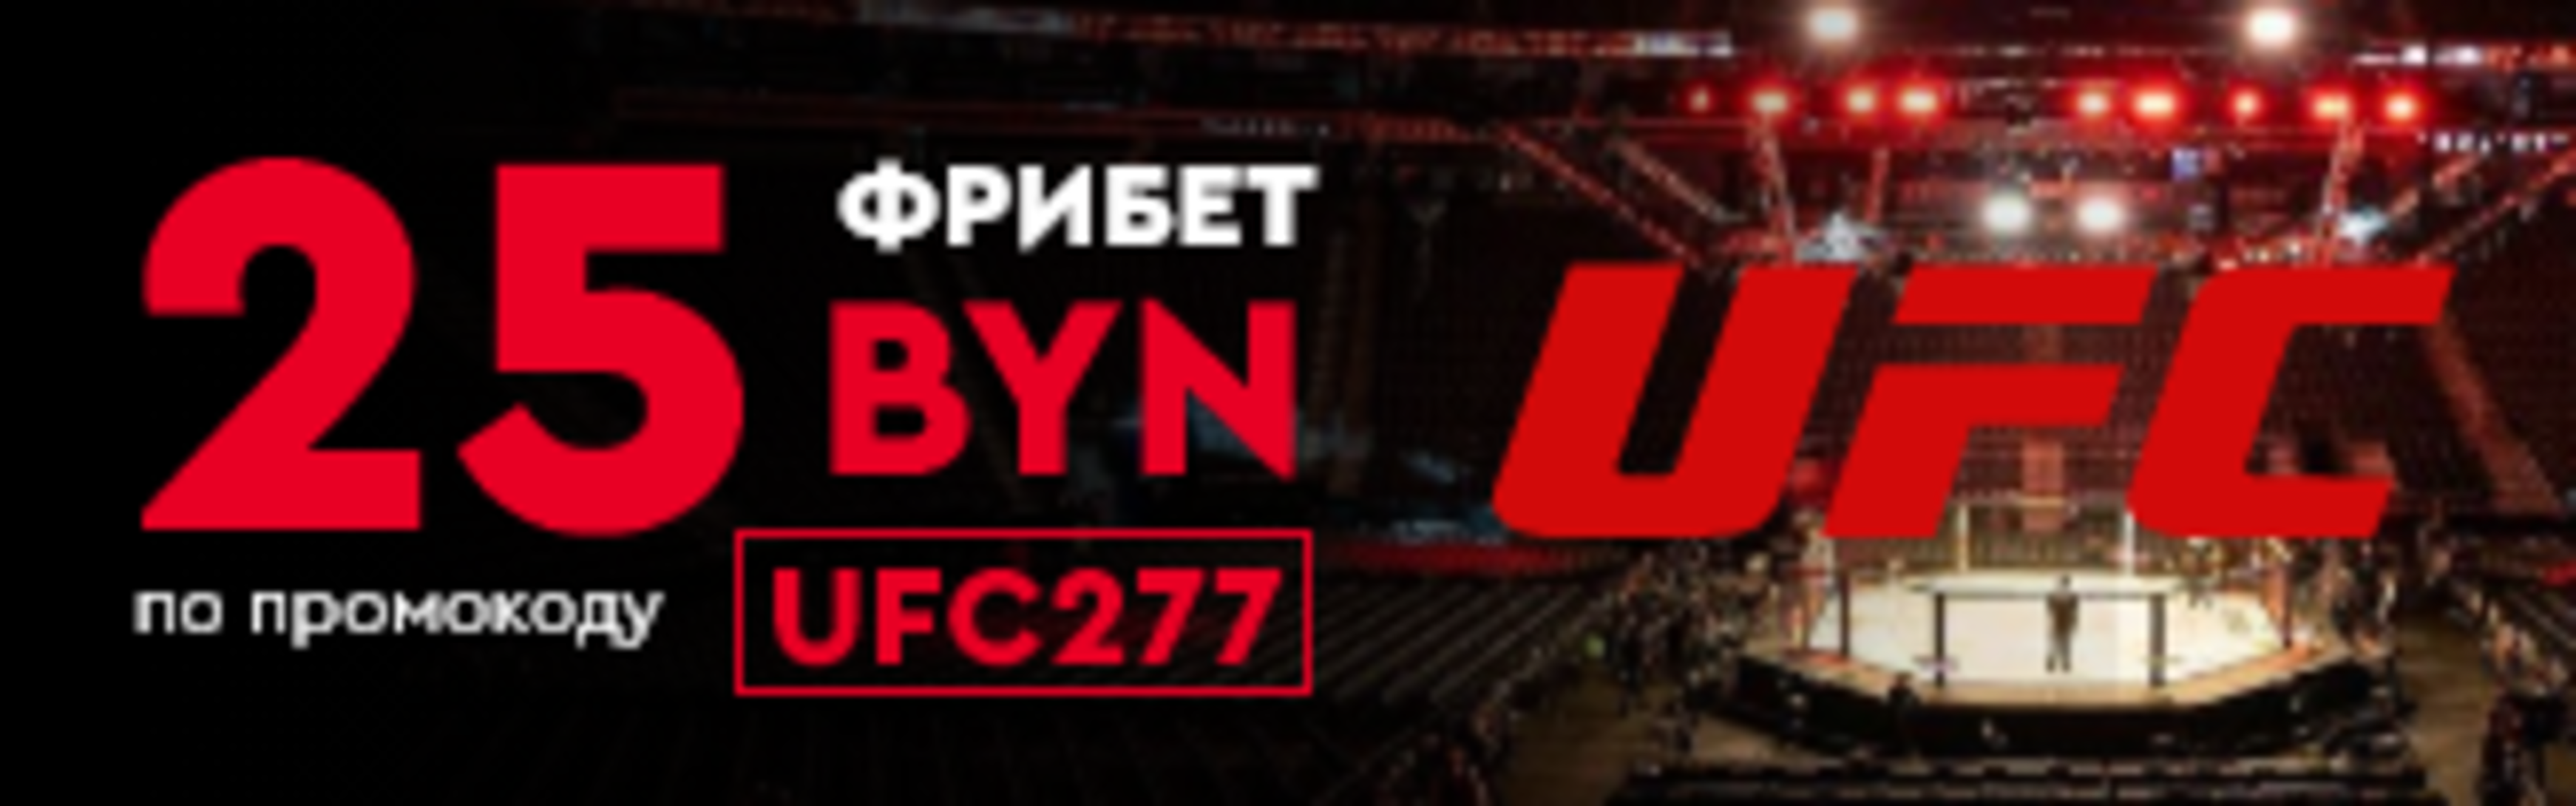 «Фонбет» в Беларуси предлагает фрибет 25 BYN за ставки на UFC 277